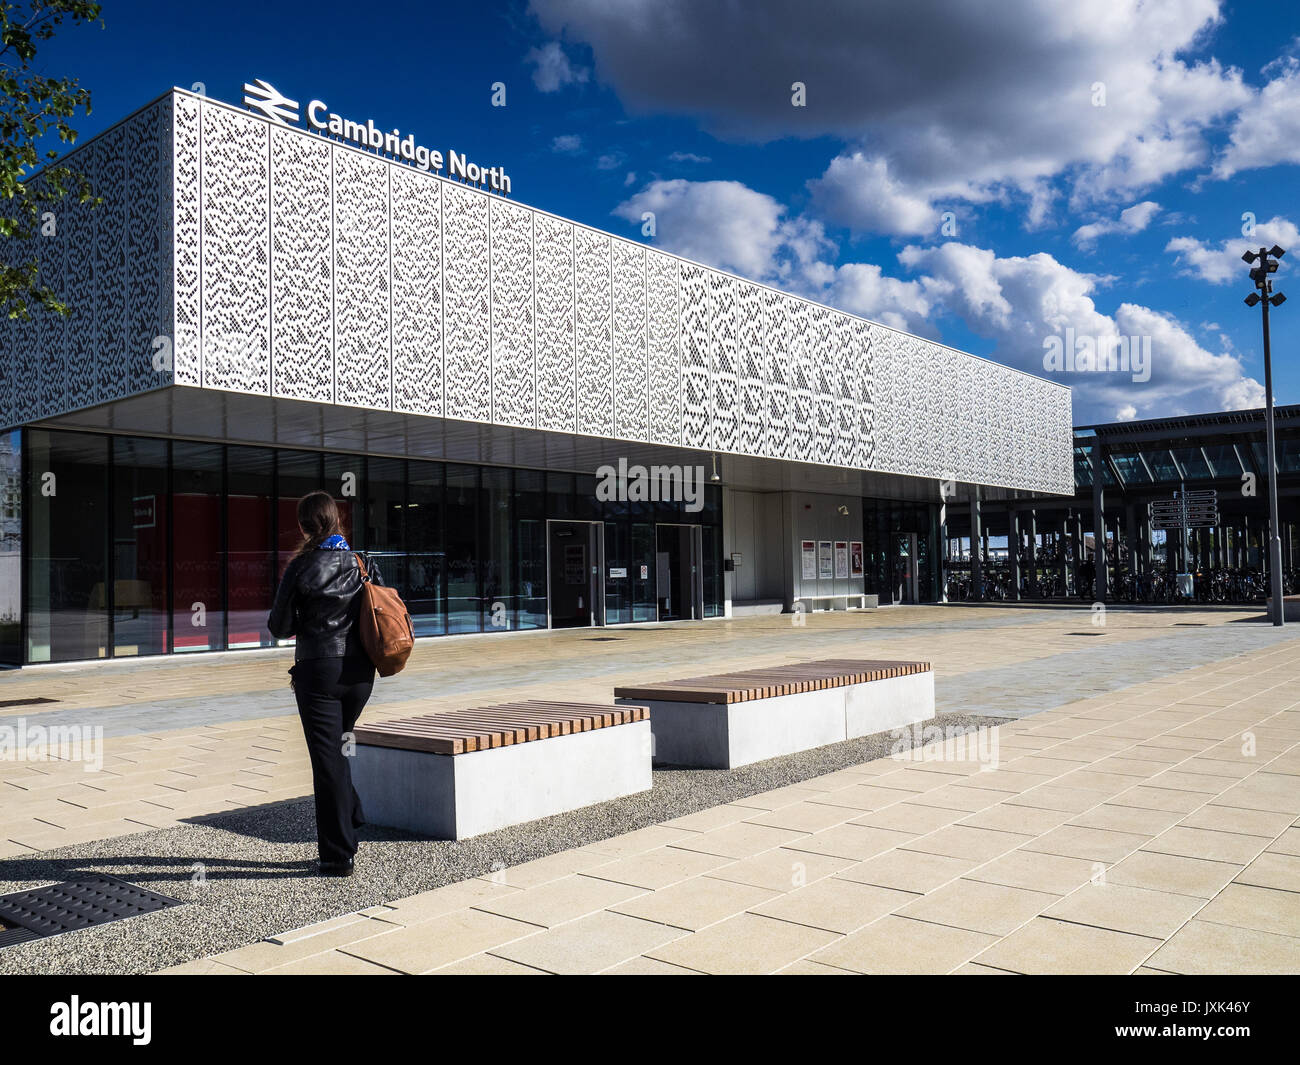 La gare du nord de Cambridge - ouvert 2017 desservant Cambridge et le parc scientifique. Conception basée sur Conway's Game of Life. Architectes Atkins. Banque D'Images